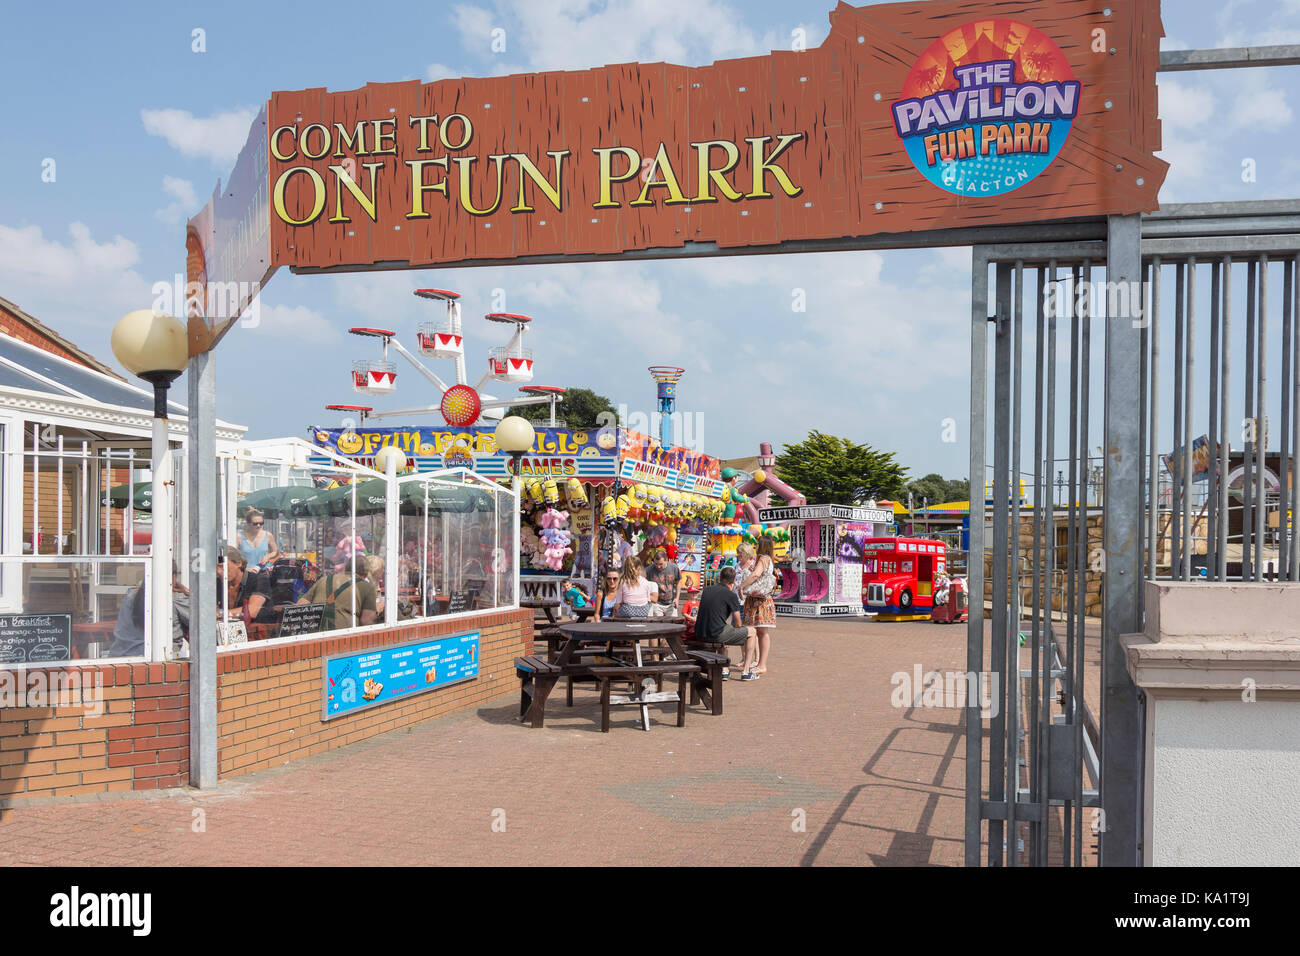 Entrée de la Pavlion Fun Park sur front de mer, Clacton-on-Sea, Essex, Angleterre, Royaume-Uni Banque D'Images